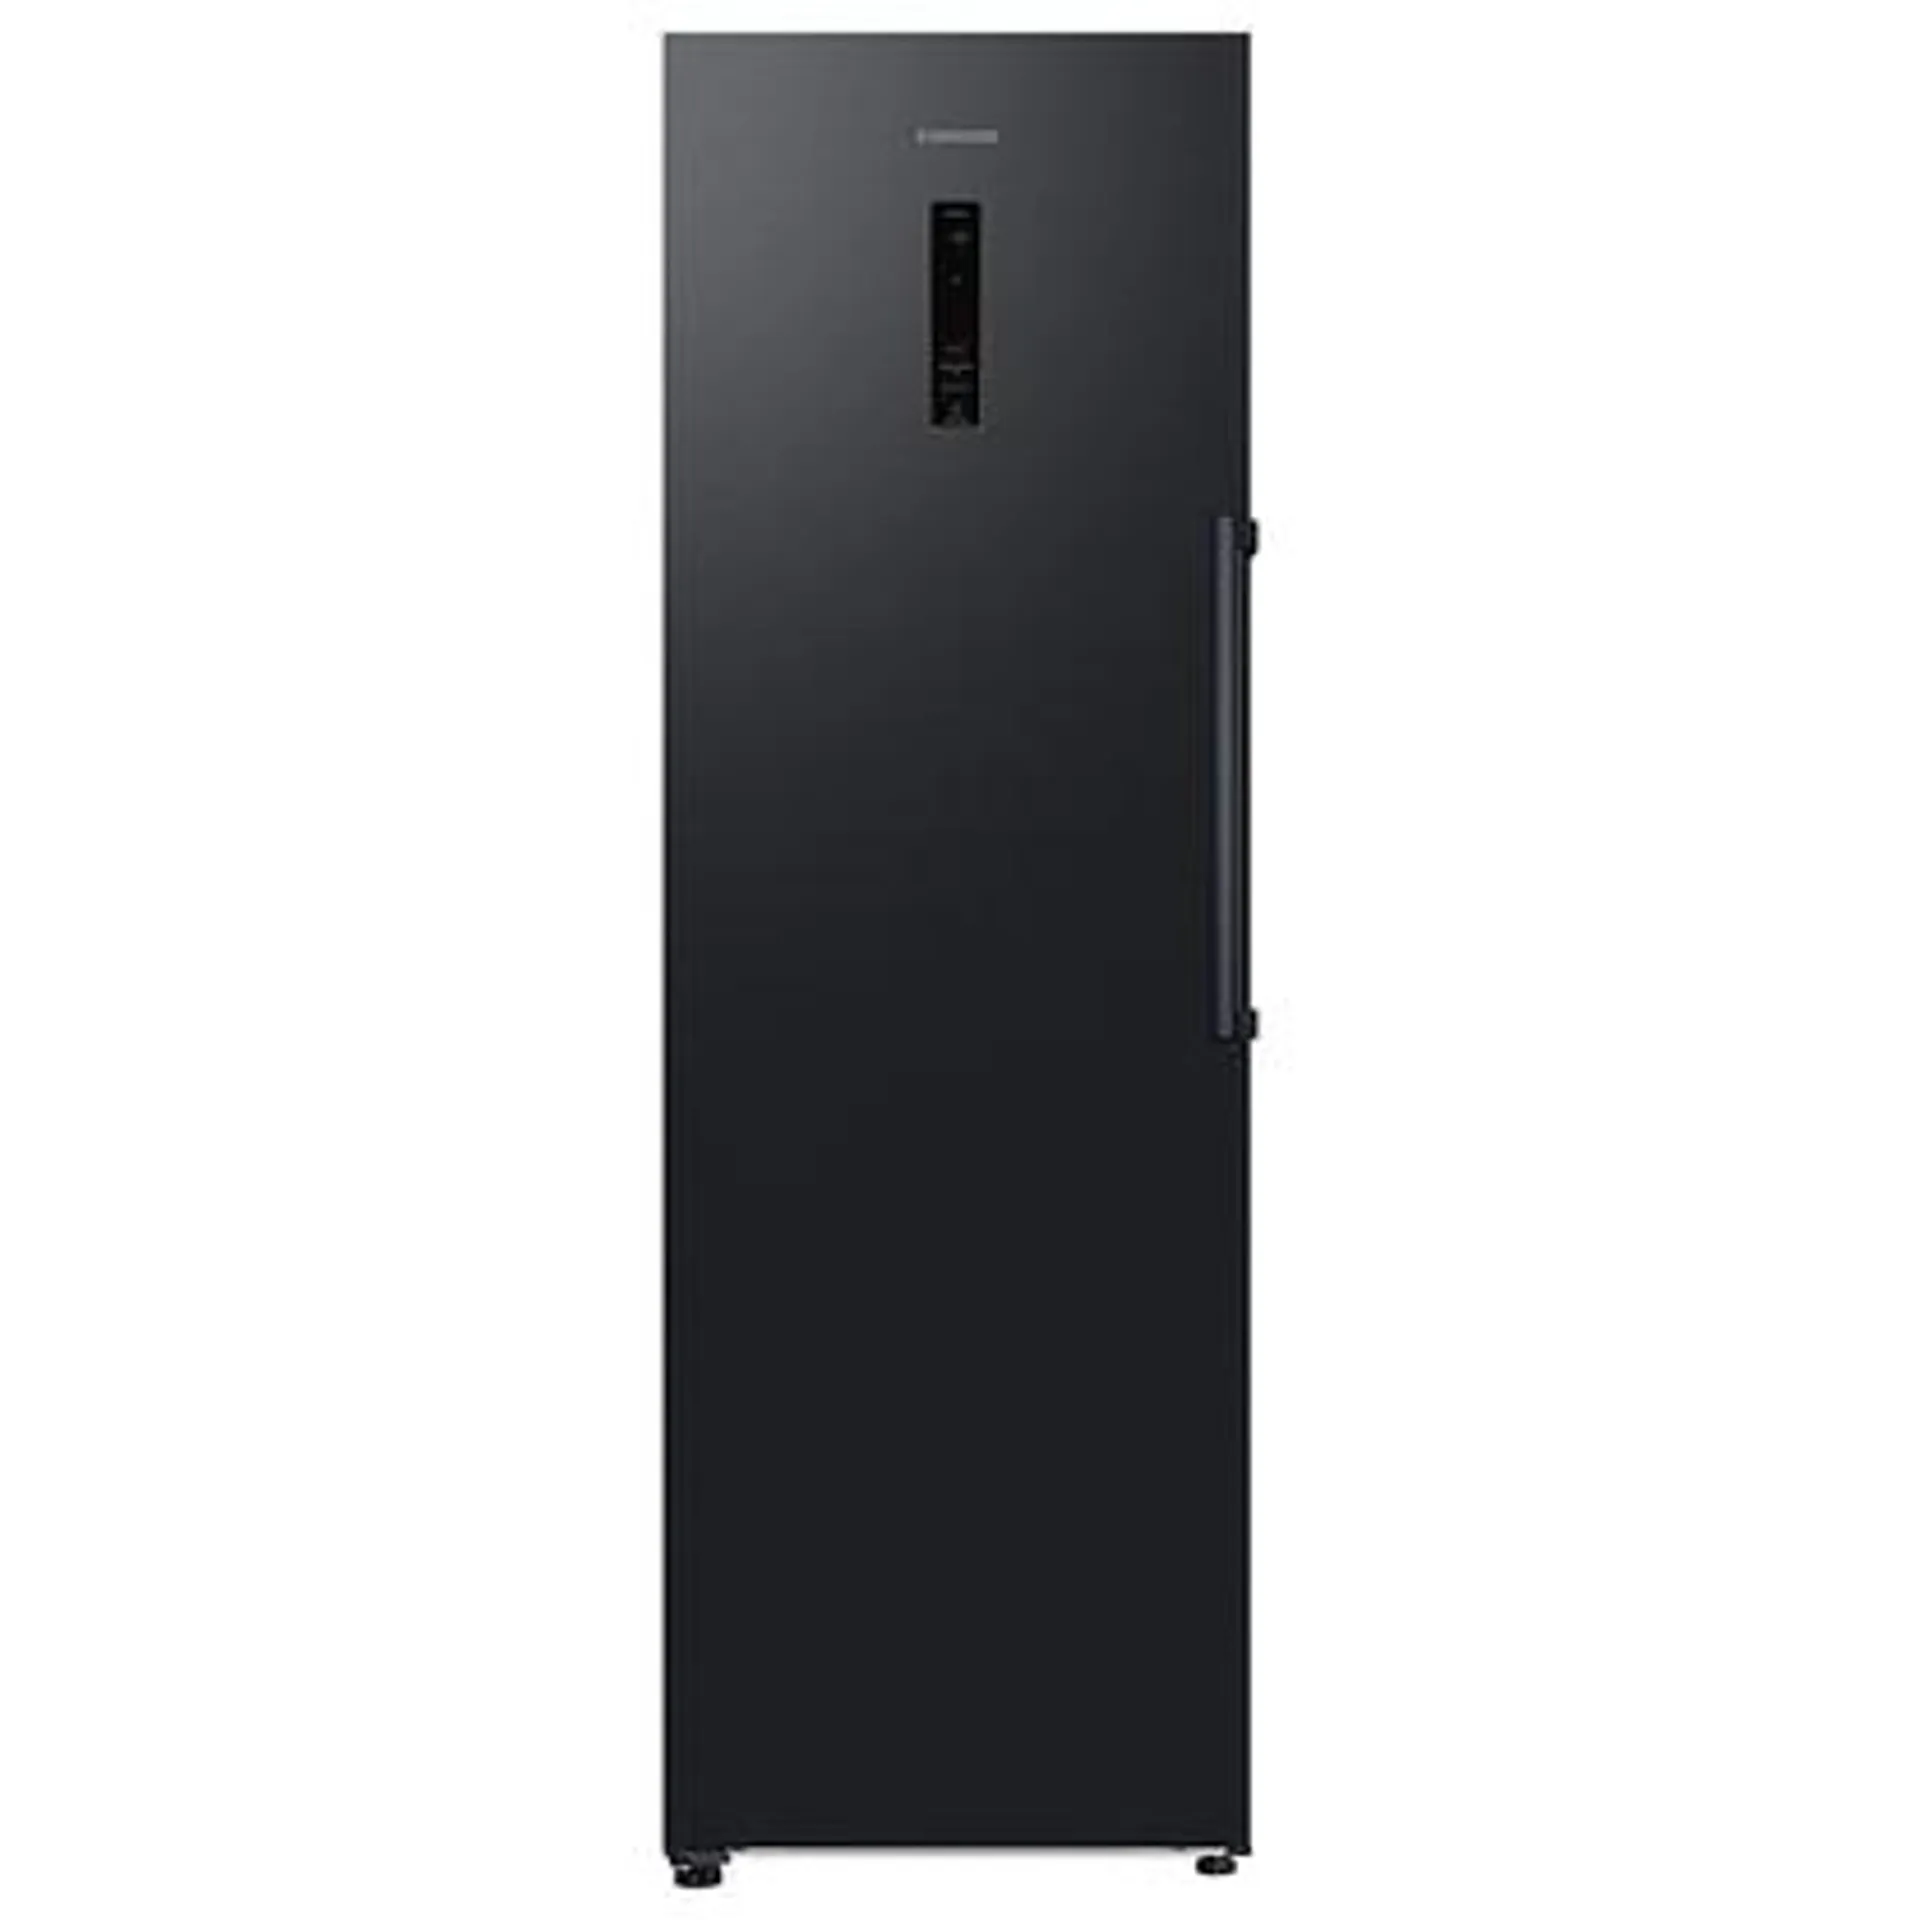 Samsung RZ32C7BDEBN 60cm Freestanding Frost Free Freezer – BLACK